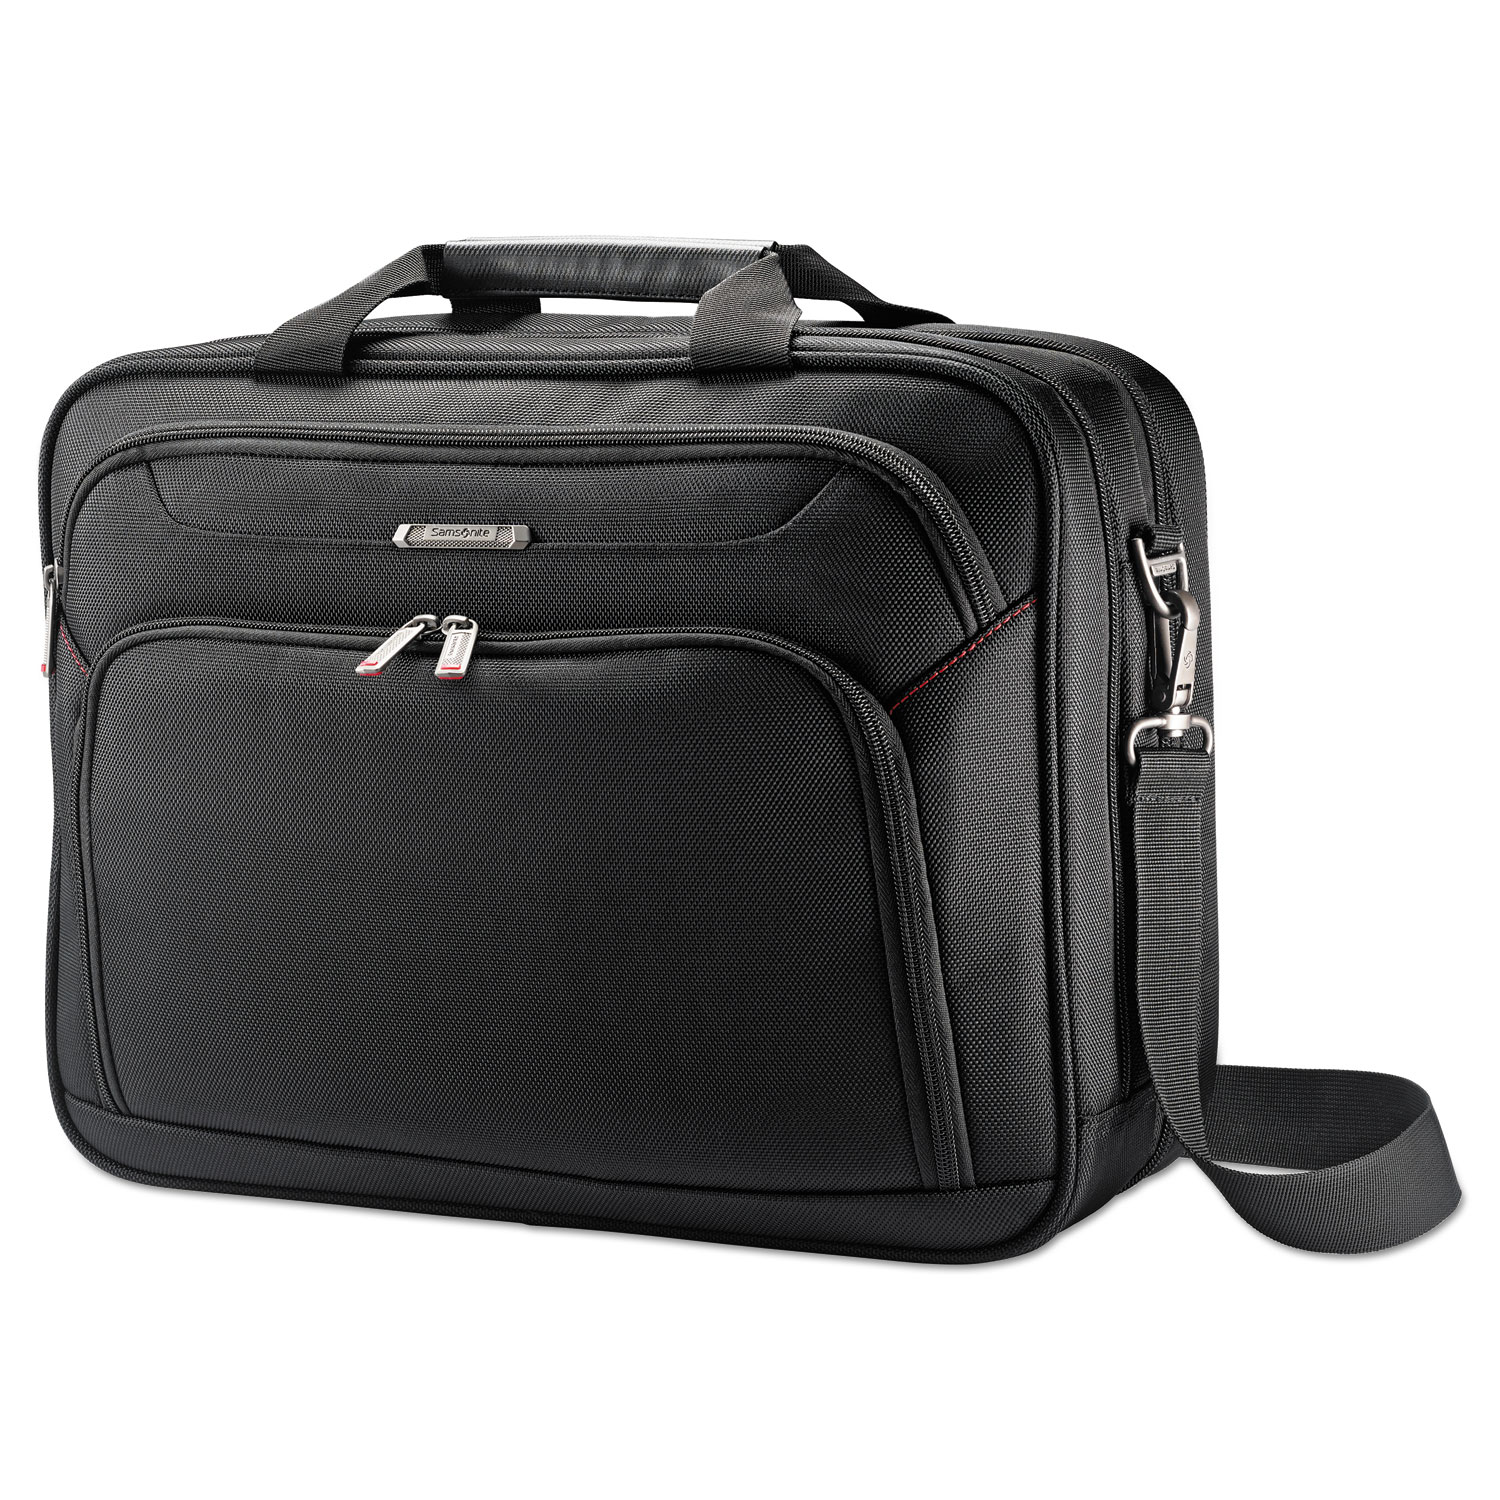 Xenon 3 Toploader Briefcase, 16.5" x 4.75" x 12.75", Polyester, Black